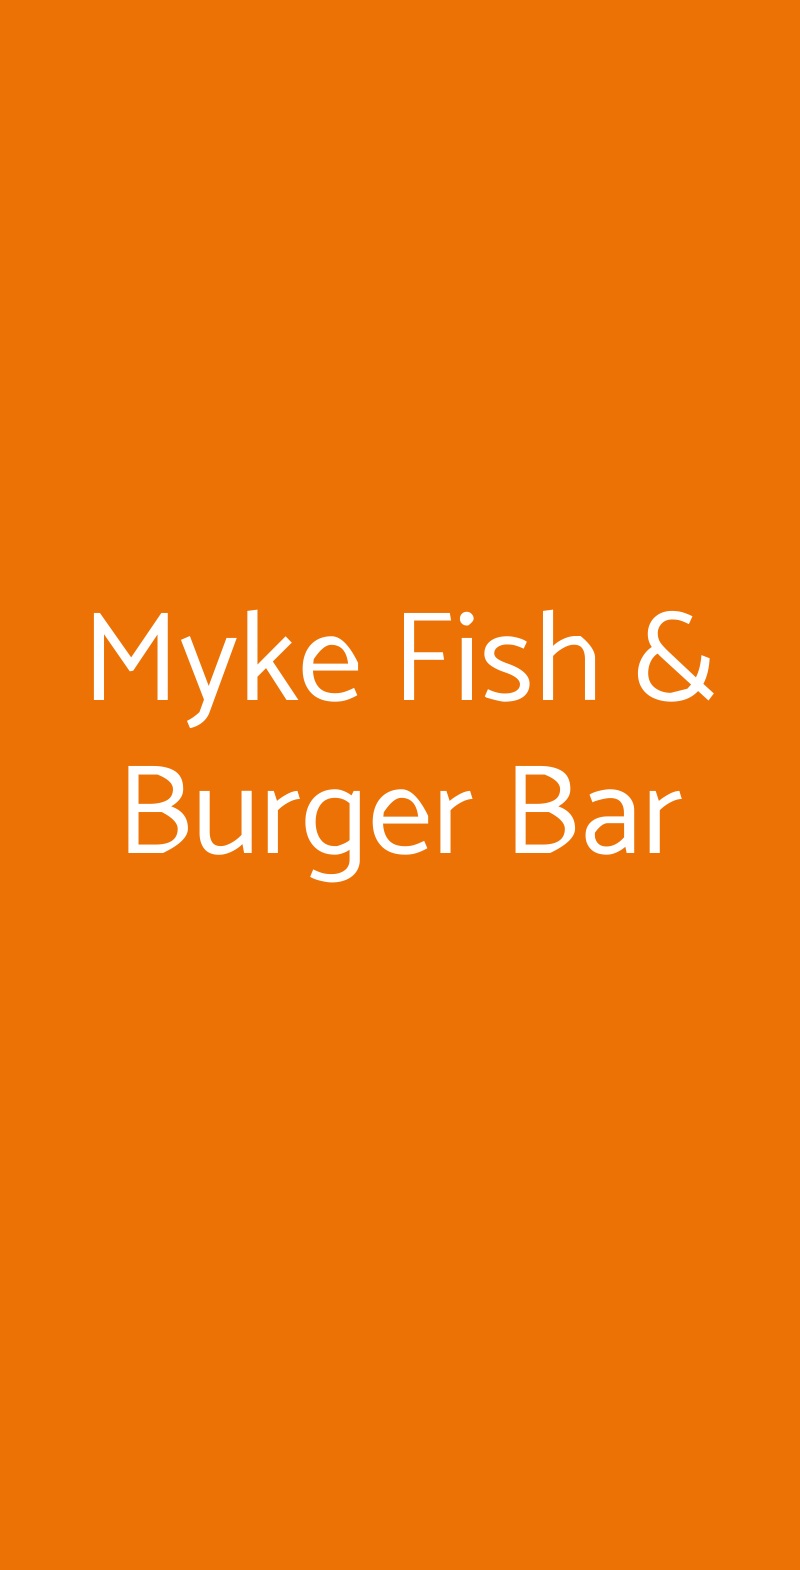 Myke Fish & Burger Bar Milano menù 1 pagina